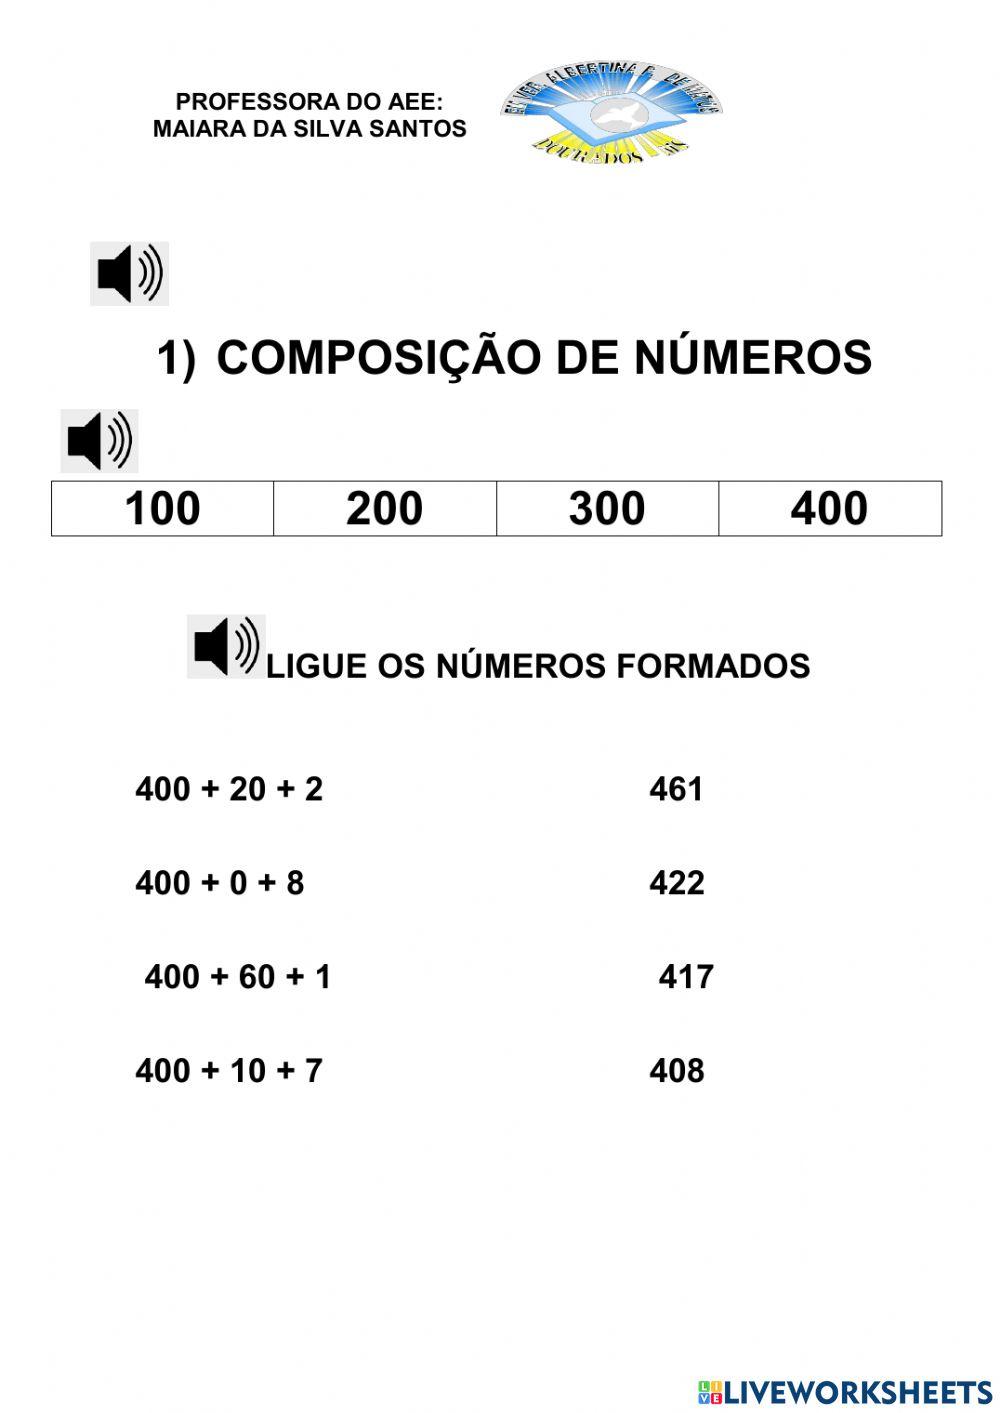 Composição numérica